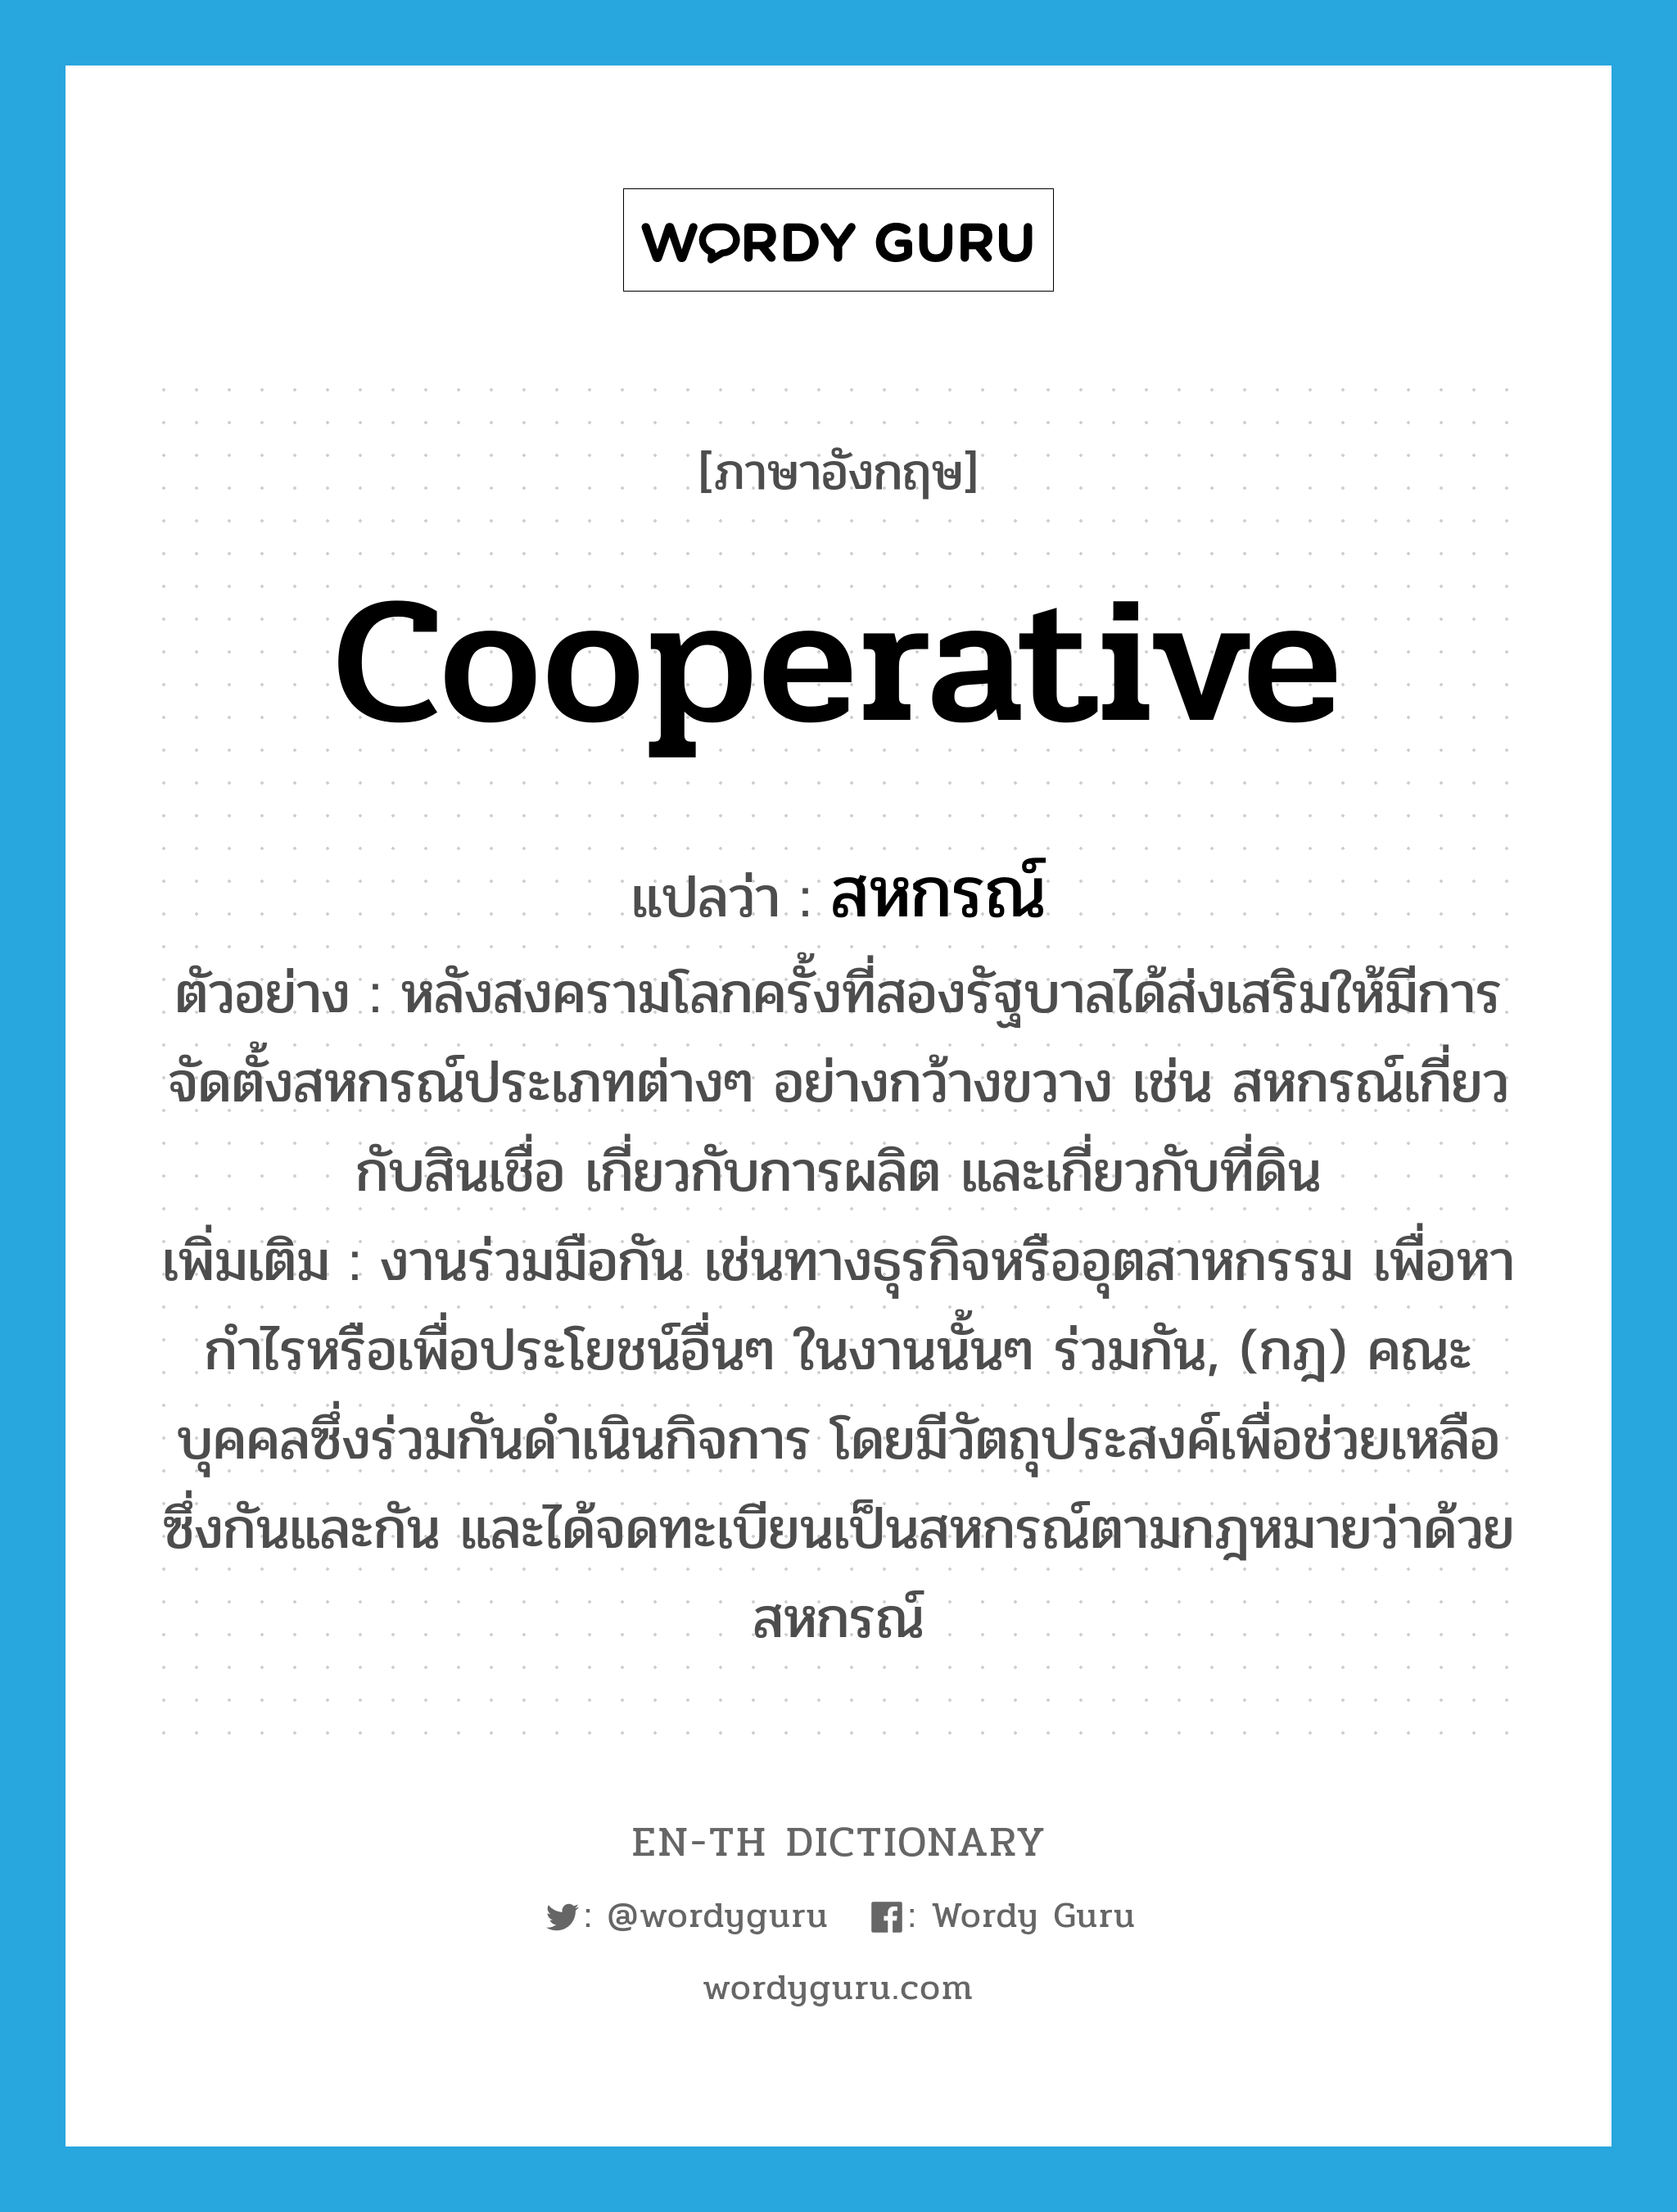 cooperative แปลว่า?, คำศัพท์ภาษาอังกฤษ cooperative แปลว่า สหกรณ์ ประเภท N ตัวอย่าง หลังสงครามโลกครั้งที่สองรัฐบาลได้ส่งเสริมให้มีการจัดตั้งสหกรณ์ประเภทต่างๆ อย่างกว้างขวาง เช่น สหกรณ์เกี่ยวกับสินเชื่อ เกี่ยวกับการผลิต และเกี่ยวกับที่ดิน เพิ่มเติม งานร่วมมือกัน เช่นทางธุรกิจหรืออุตสาหกรรม เพื่อหากำไรหรือเพื่อประโยชน์อื่นๆ ในงานนั้นๆ ร่วมกัน, (กฎ) คณะบุคคลซึ่งร่วมกันดำเนินกิจการ โดยมีวัตถุประสงค์เพื่อช่วยเหลือซึ่งกันและกัน และได้จดทะเบียนเป็นสหกรณ์ตามกฎหมายว่าด้วยสหกรณ์ หมวด N